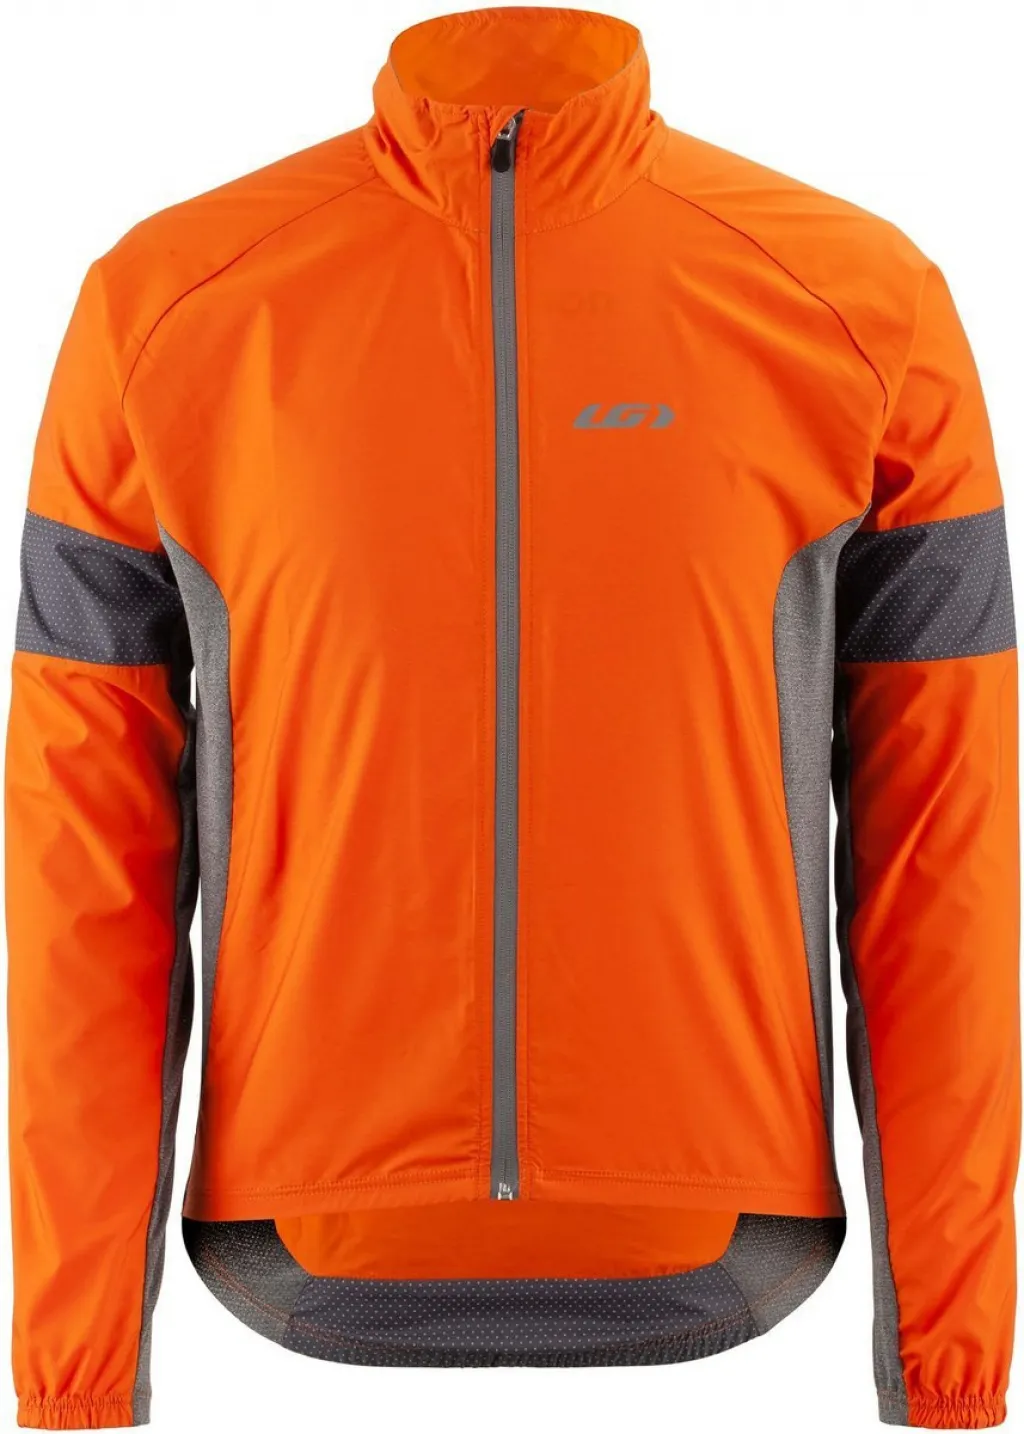 Куртка Garneau Modesto Cycling 3 Jacket оранжево-серая